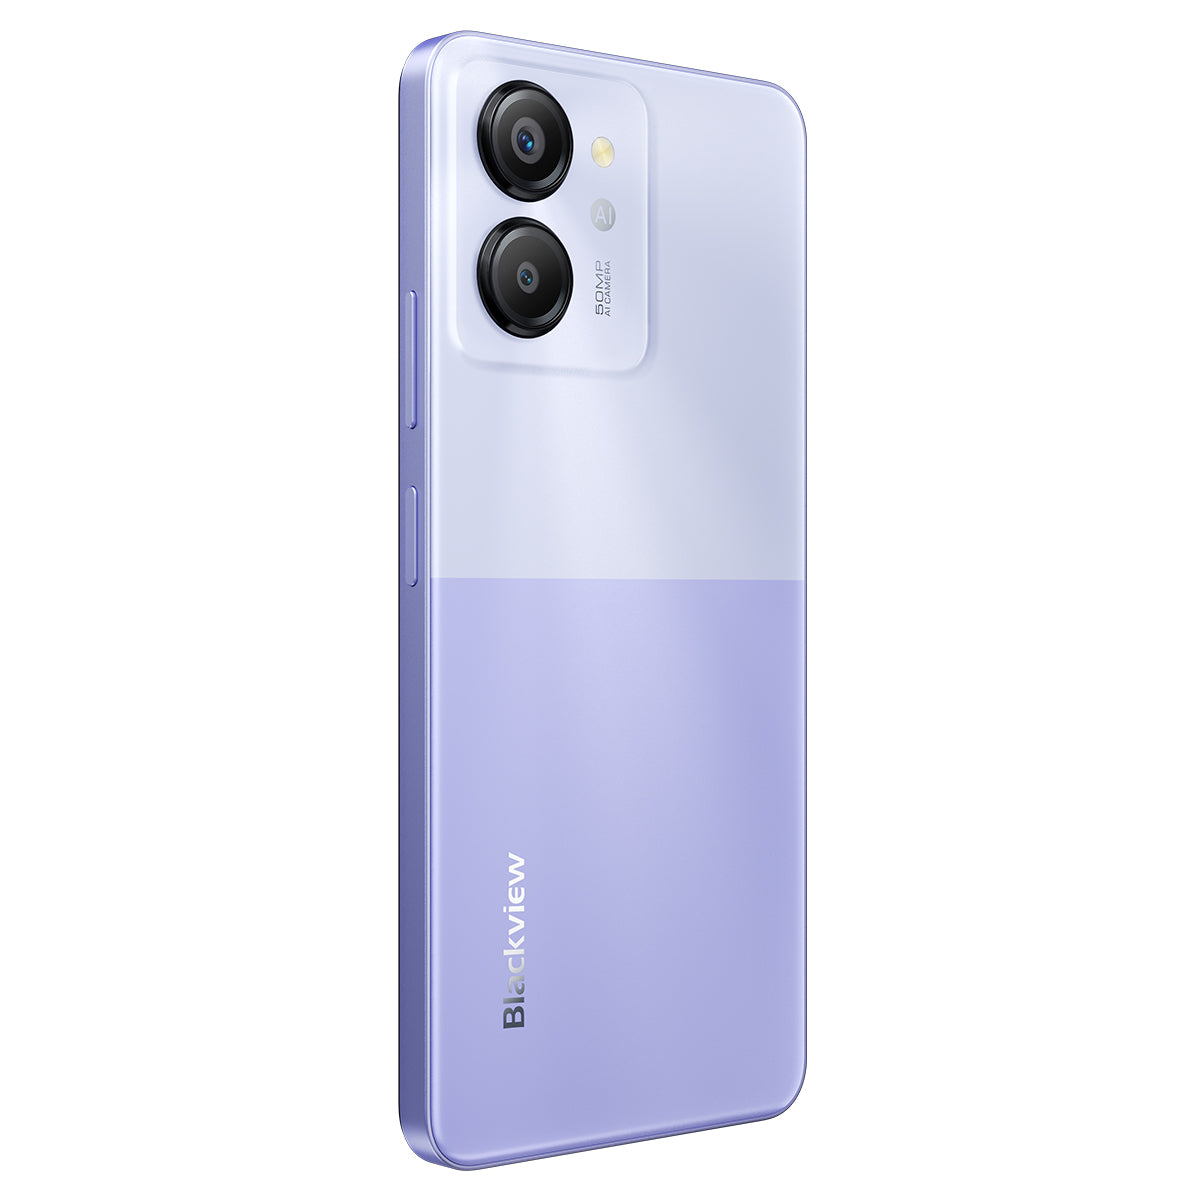 Blackview Color 8 - Smartphone 4G Unisoc T616 Octa-core da 6,75" da 8 GB+128 GB/256 GB con fotocamera da 50 MP